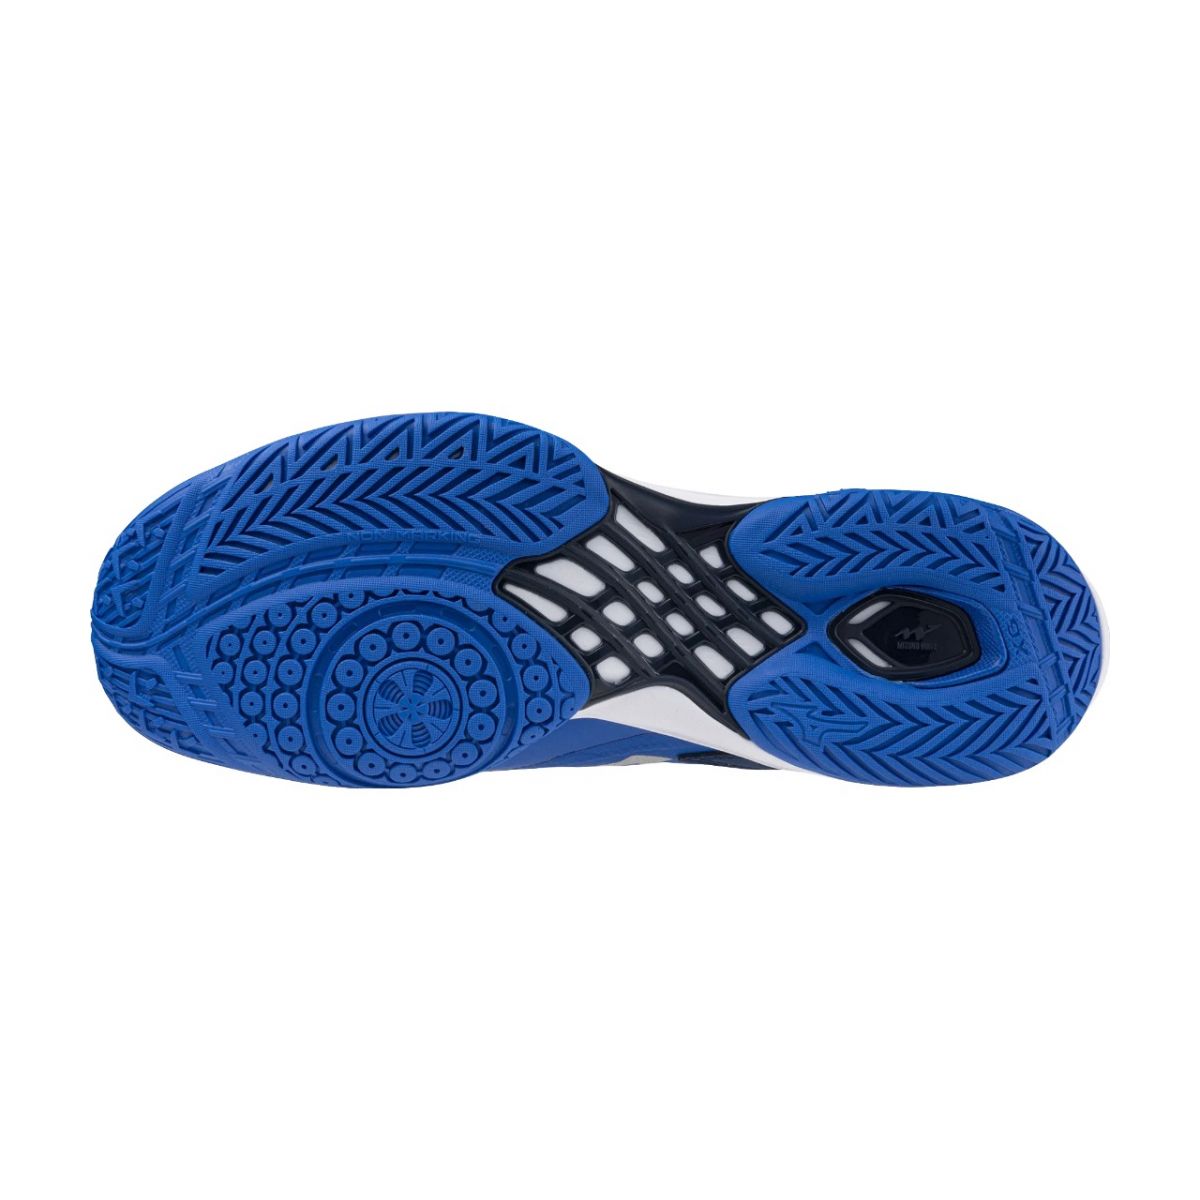 Giày cầu lông Mizuno Wave Claw 3 - Xanh trắng xanh chính hãng (71GA244301)